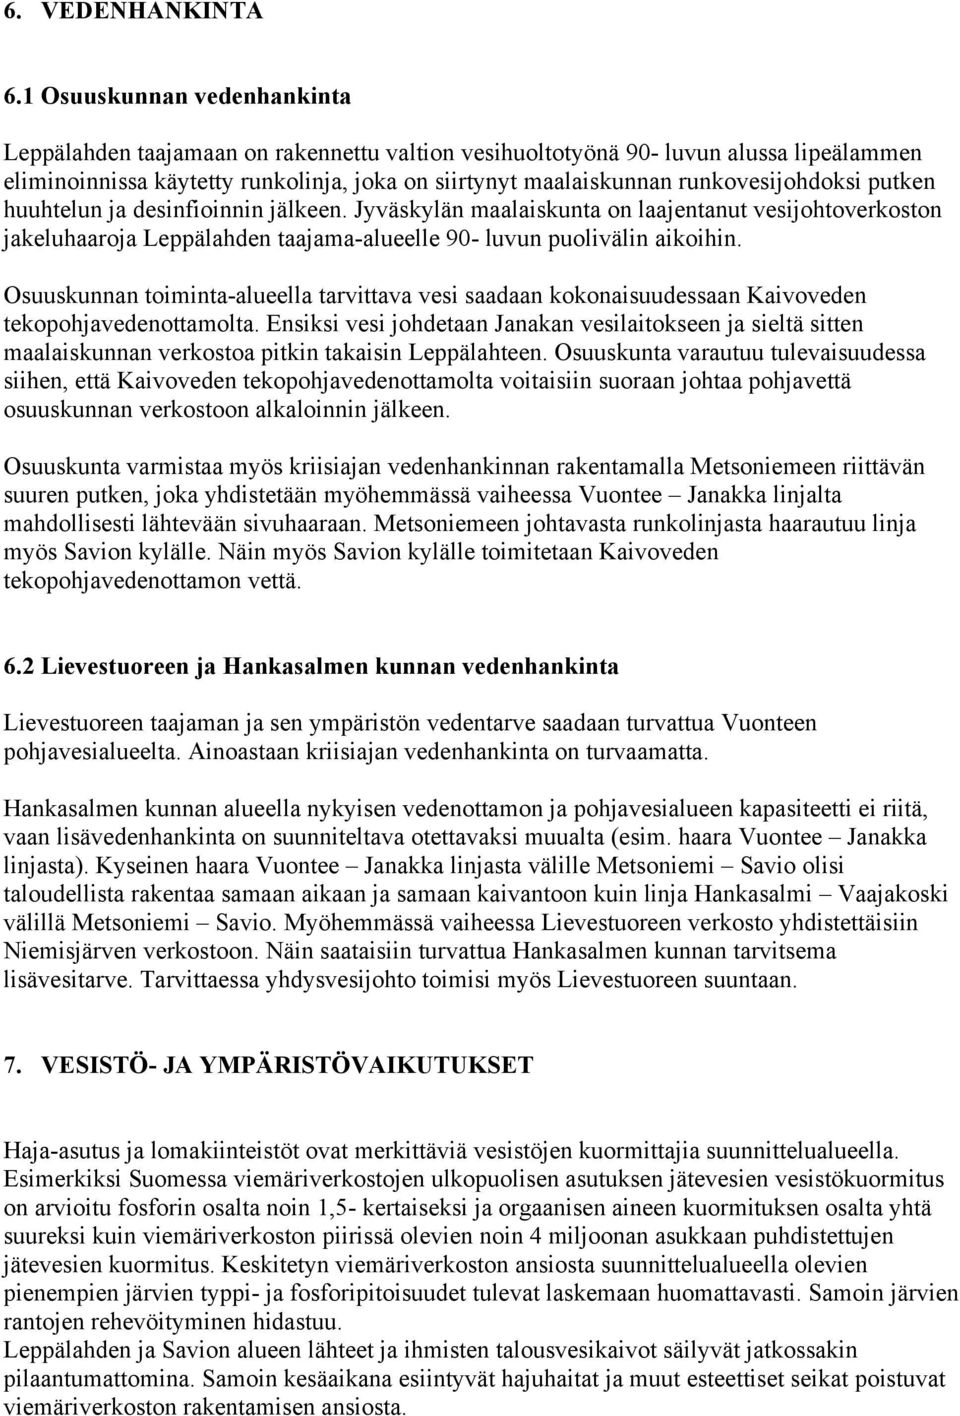 runkovesijohdoksi putken huuhtelun ja desinfioinnin jälkeen. Jyväskylän maalaiskunta on laajentanut vesijohtoverkoston jakeluhaaroja Leppälahden taajama-alueelle 90- luvun puolivälin aikoihin.